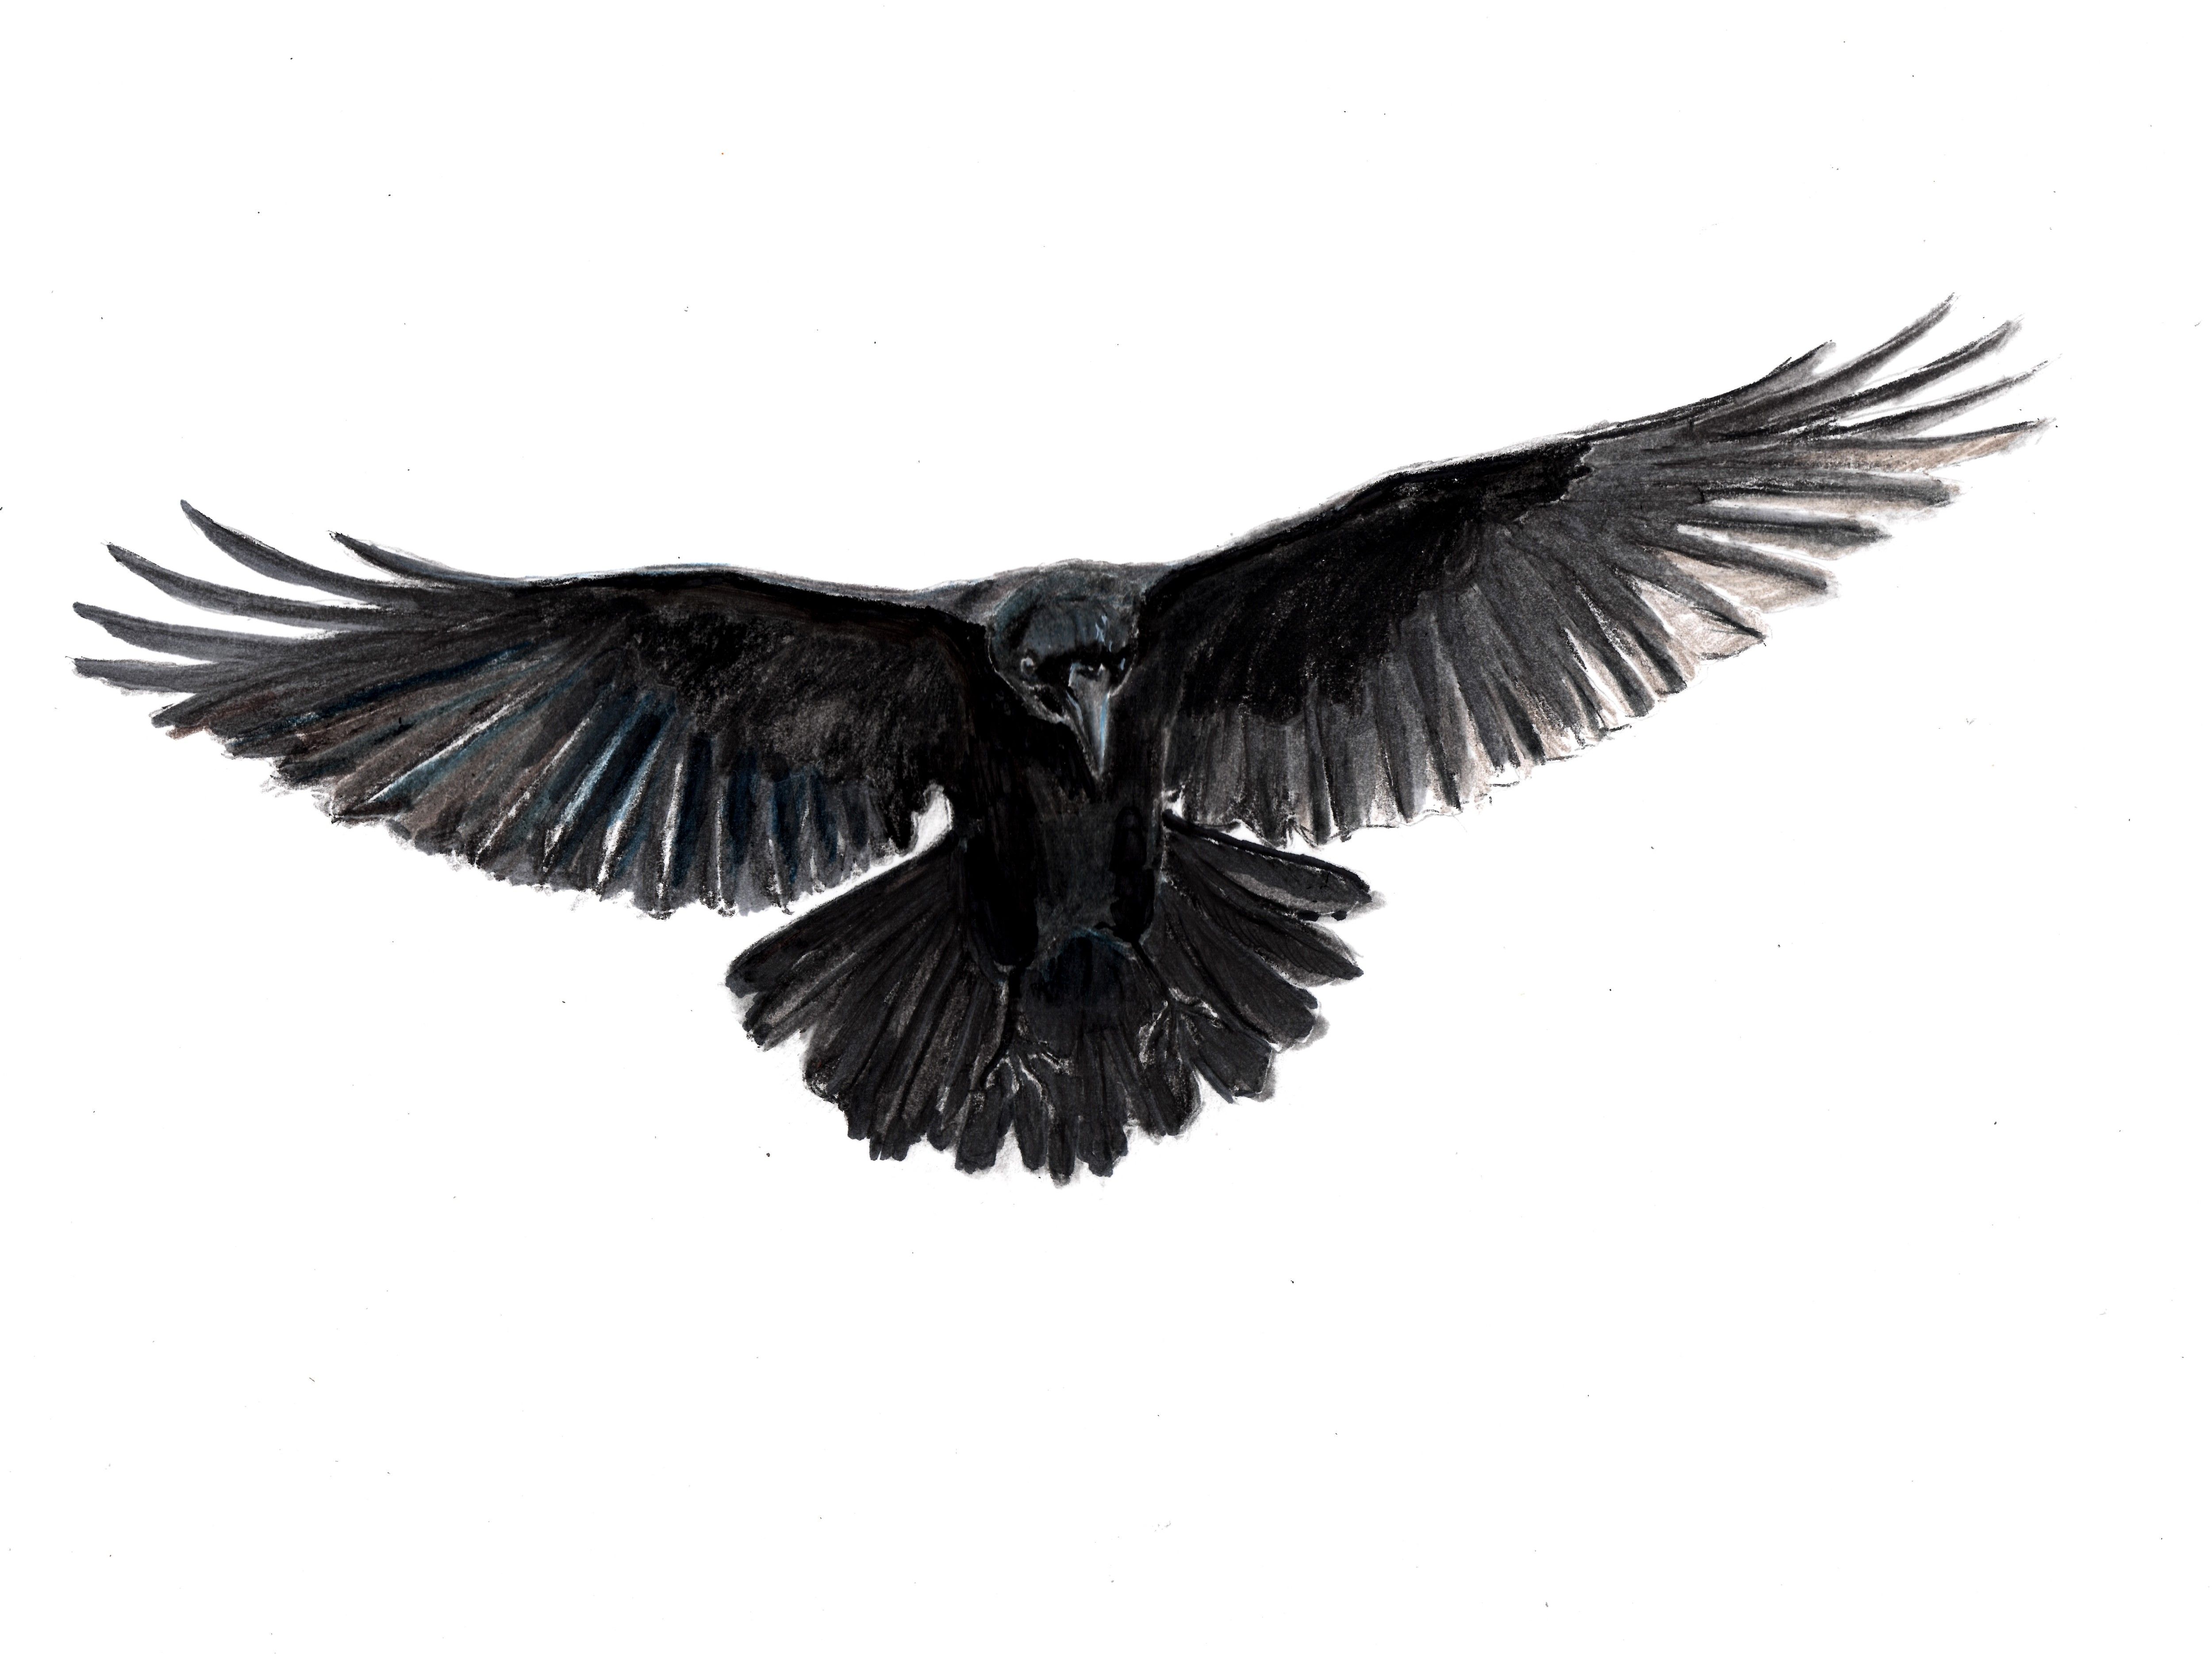 Крыло ворона 1. Ворон с расправленными крыльями. Черный ворон с расправленными крыльями. Крыло ворона. Ворон с распахнутыми крыльями.